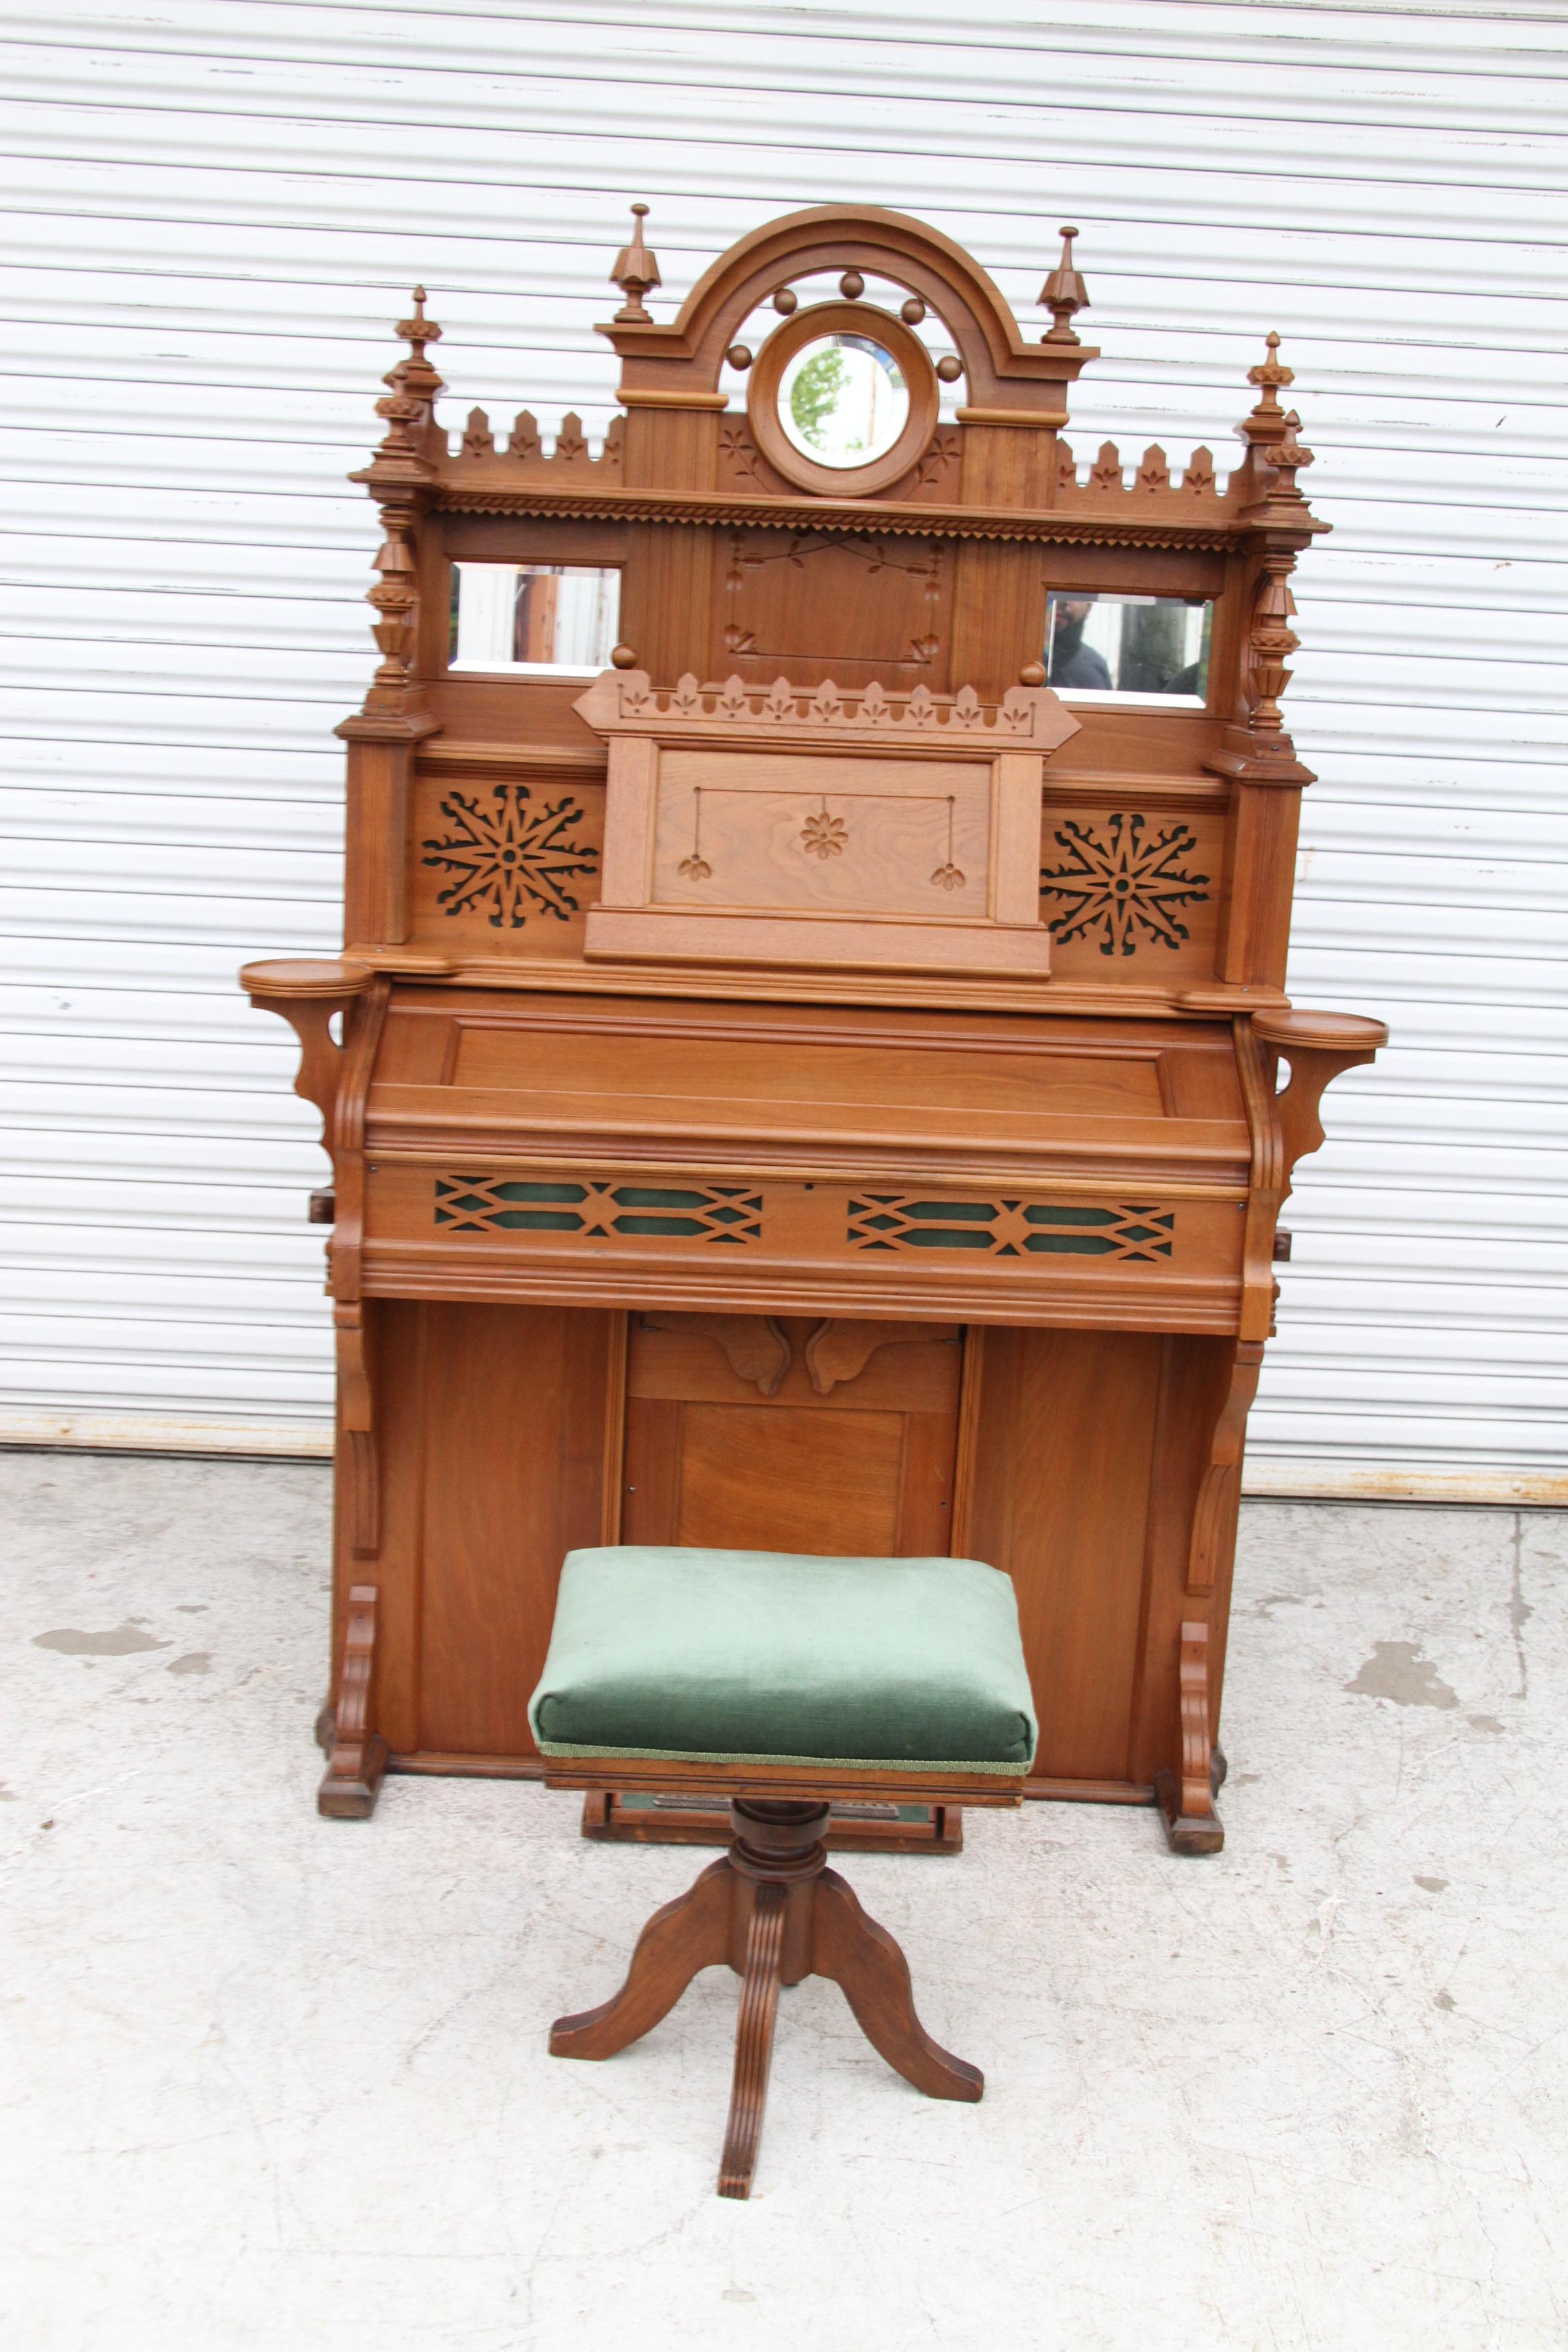 antique pump organ for sale